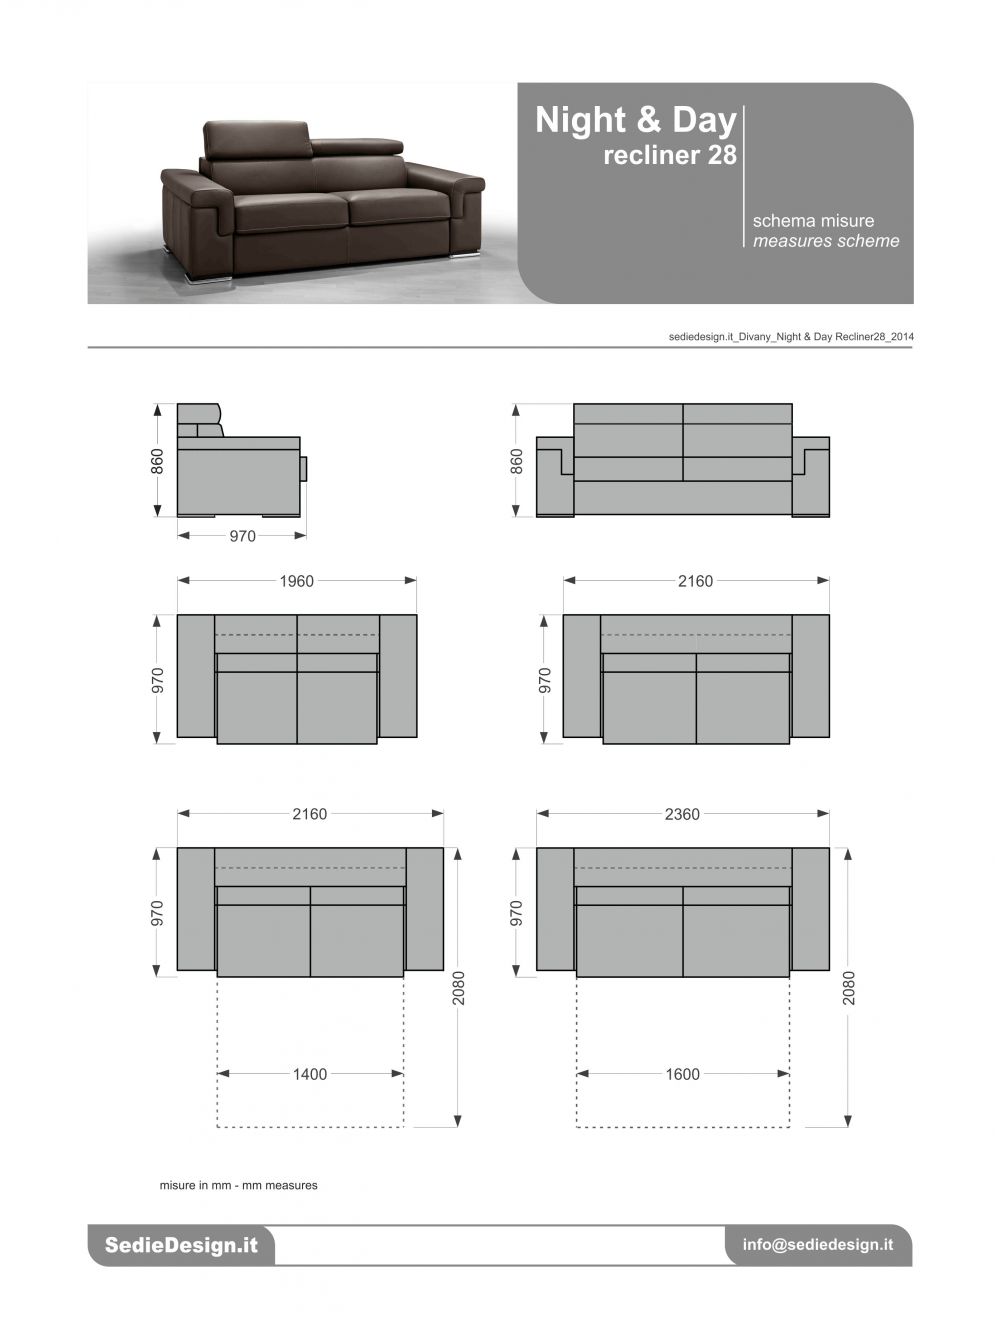 Ghế sofa Italia: Sự kết hợp hoàn hảo giữa thiết kế tinh tế và chất lượng tuyệt vời, những chiếc ghế sofa Italia sẽ là điểm nhấn hoàn hảo cho căn phòng của bạn. Với đa dạng về kiểu dáng và màu sắc, bạn sẽ tìm được chiếc sofa ưng ý nhất cho gia đình mình.